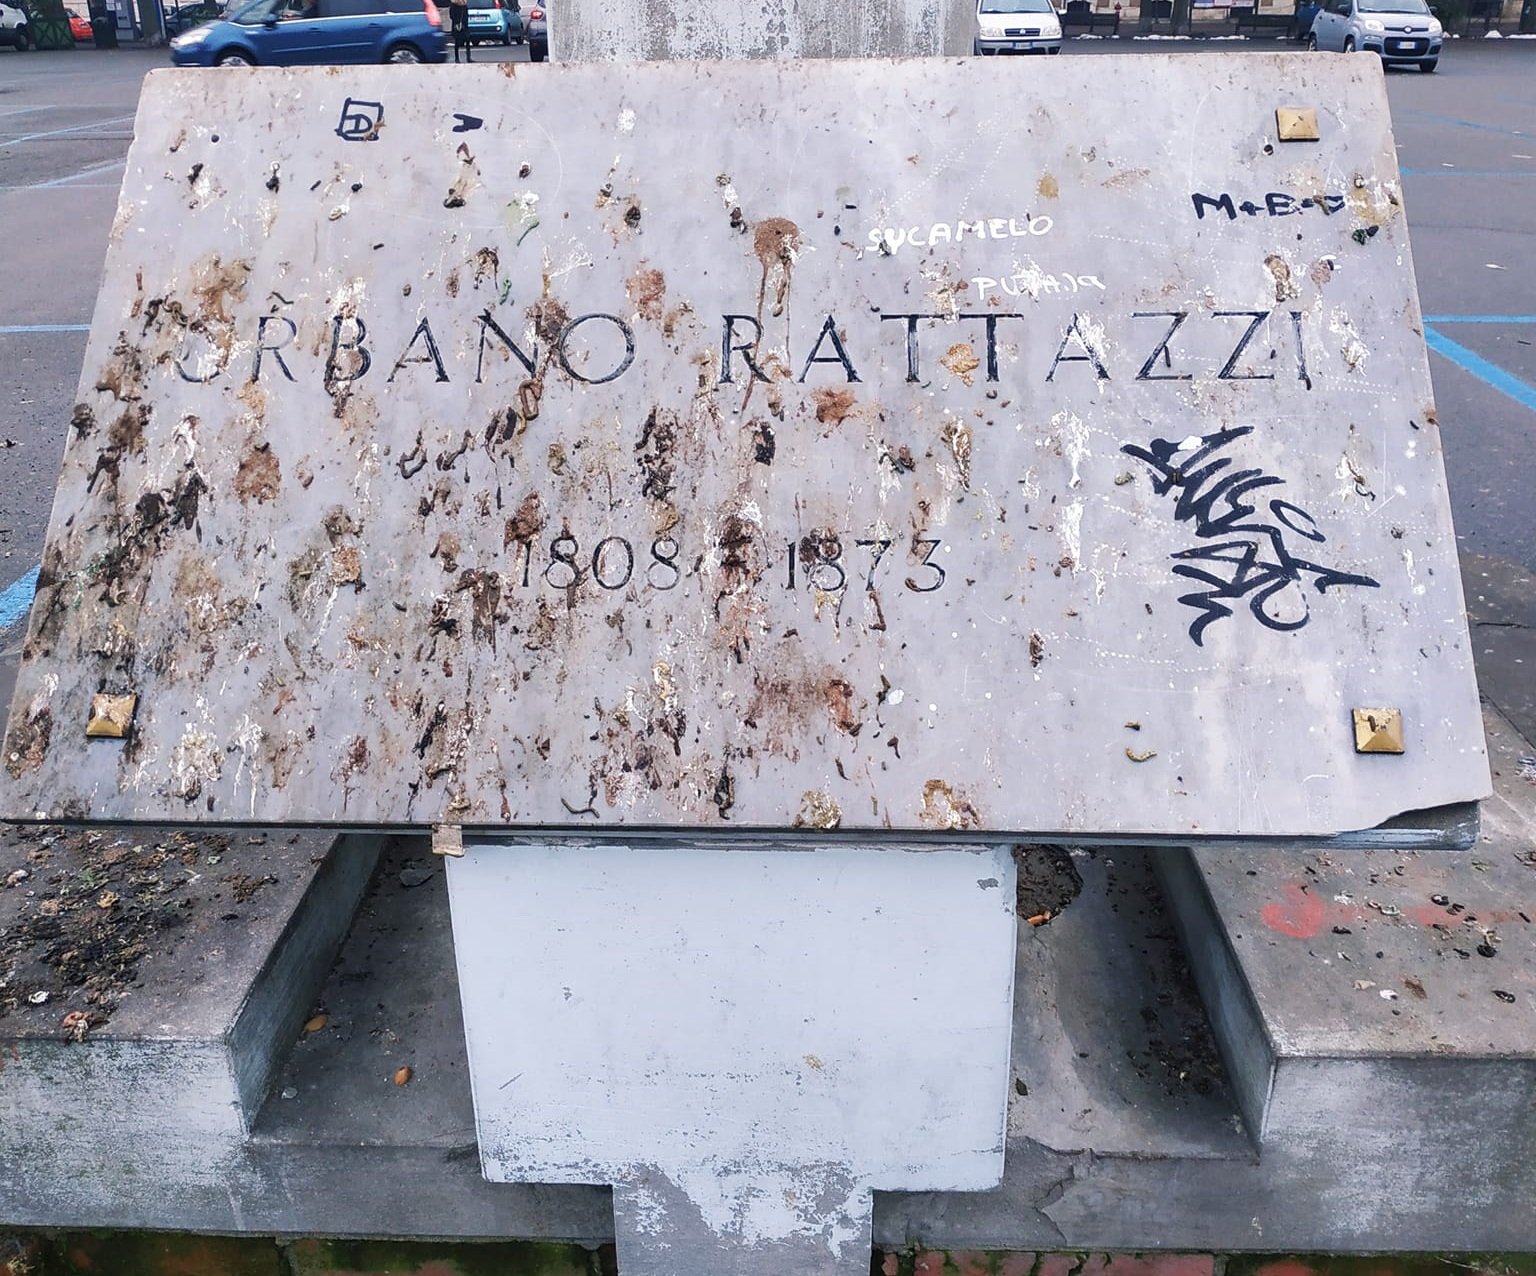 Imbrattata di guano e vandalizzata: la triste fine della statua di Rattazzi